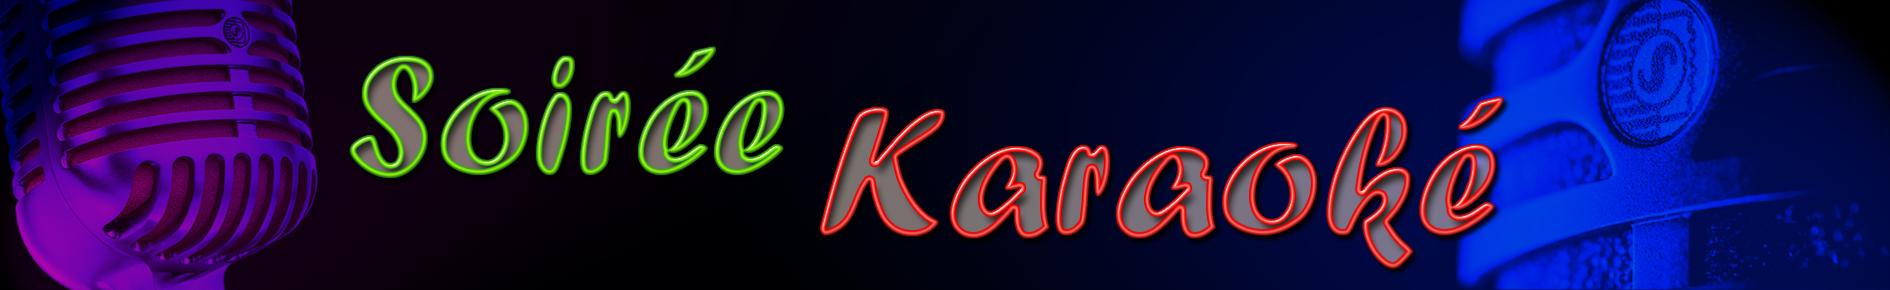 Location Karaoké - soirée karaoké à la maison - Location matériel karaoké géant